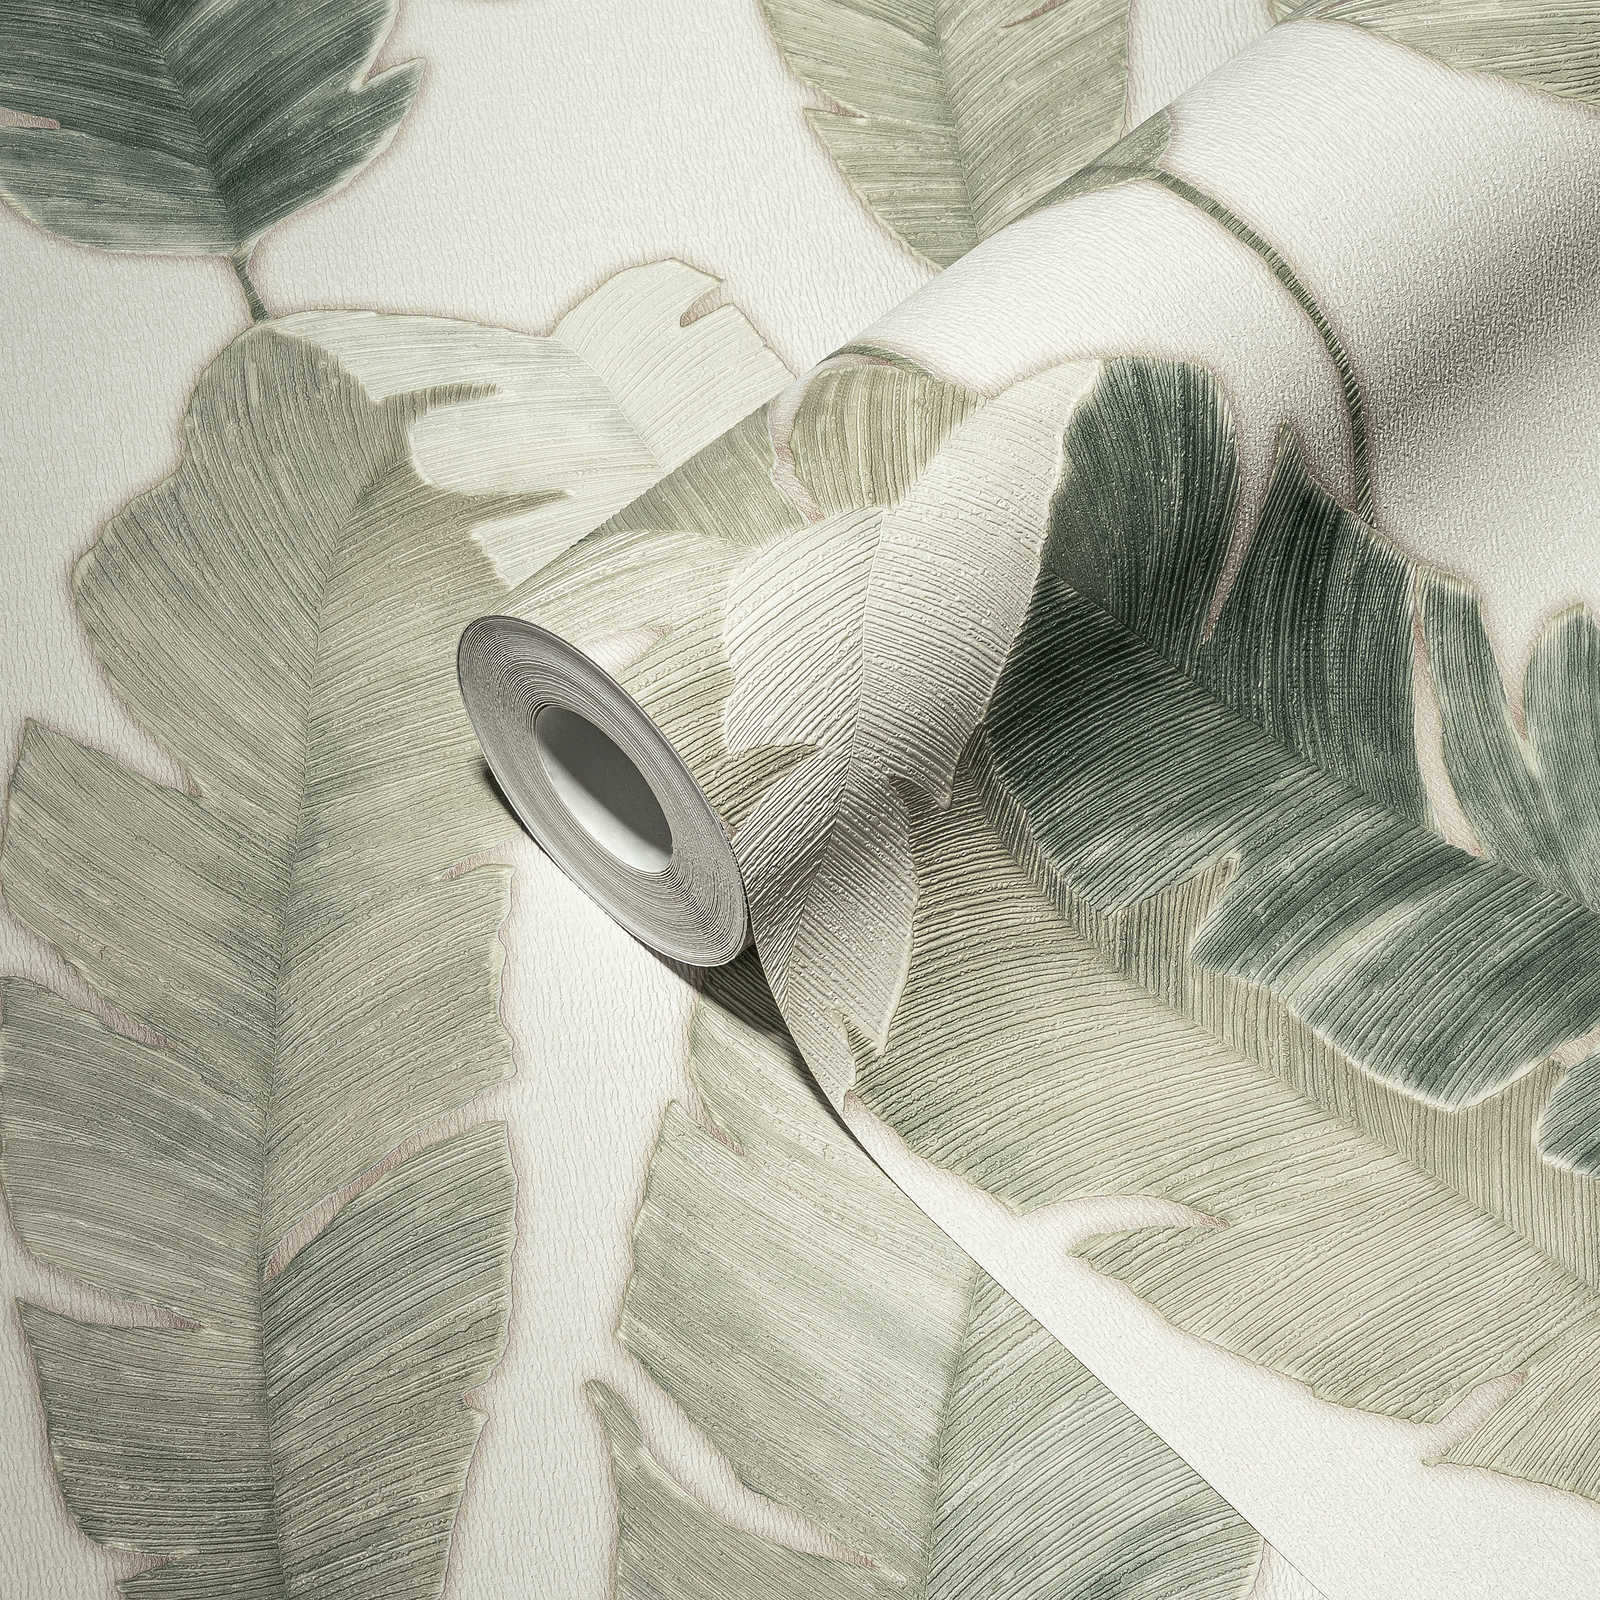             Papier peint intissé avec des feuilles de palmier dans une couleur claire - blanc, vert, bleu
        